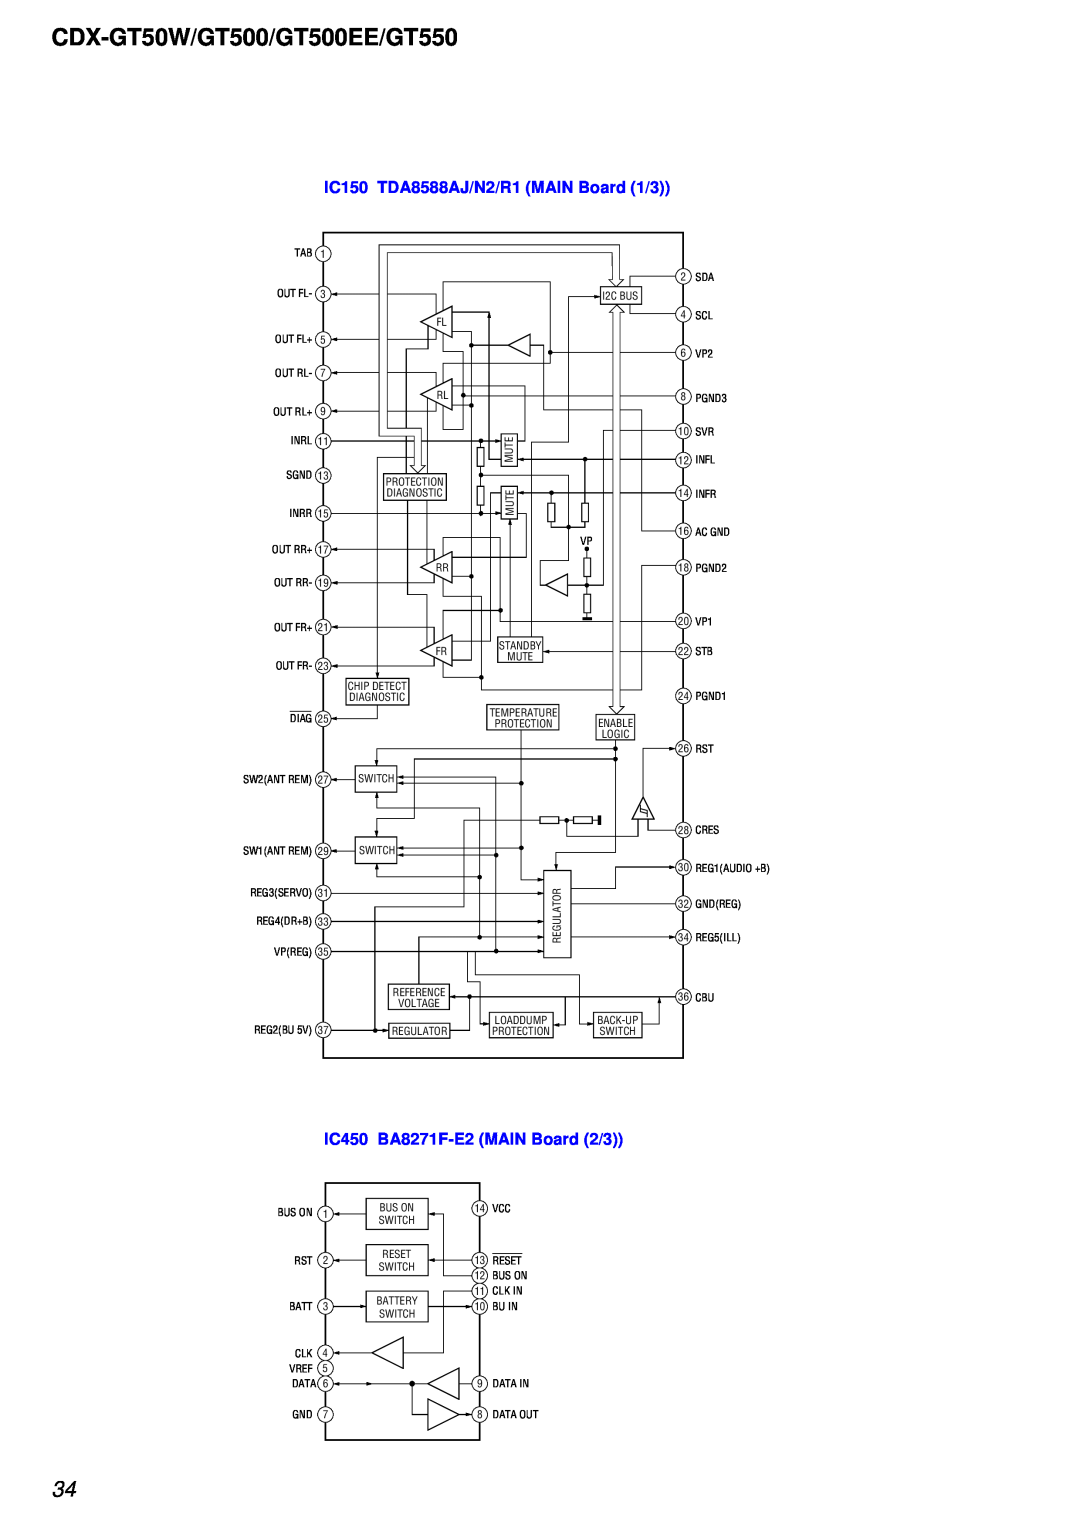 Sony CDX-GT500EE CDX-GT50W/GT500/GT500EE/GT550, IC150 TDA8588AJ/N2/R1 MAIN Board 1/3, IC450 BA8271F-E2MAIN Board 2/3 